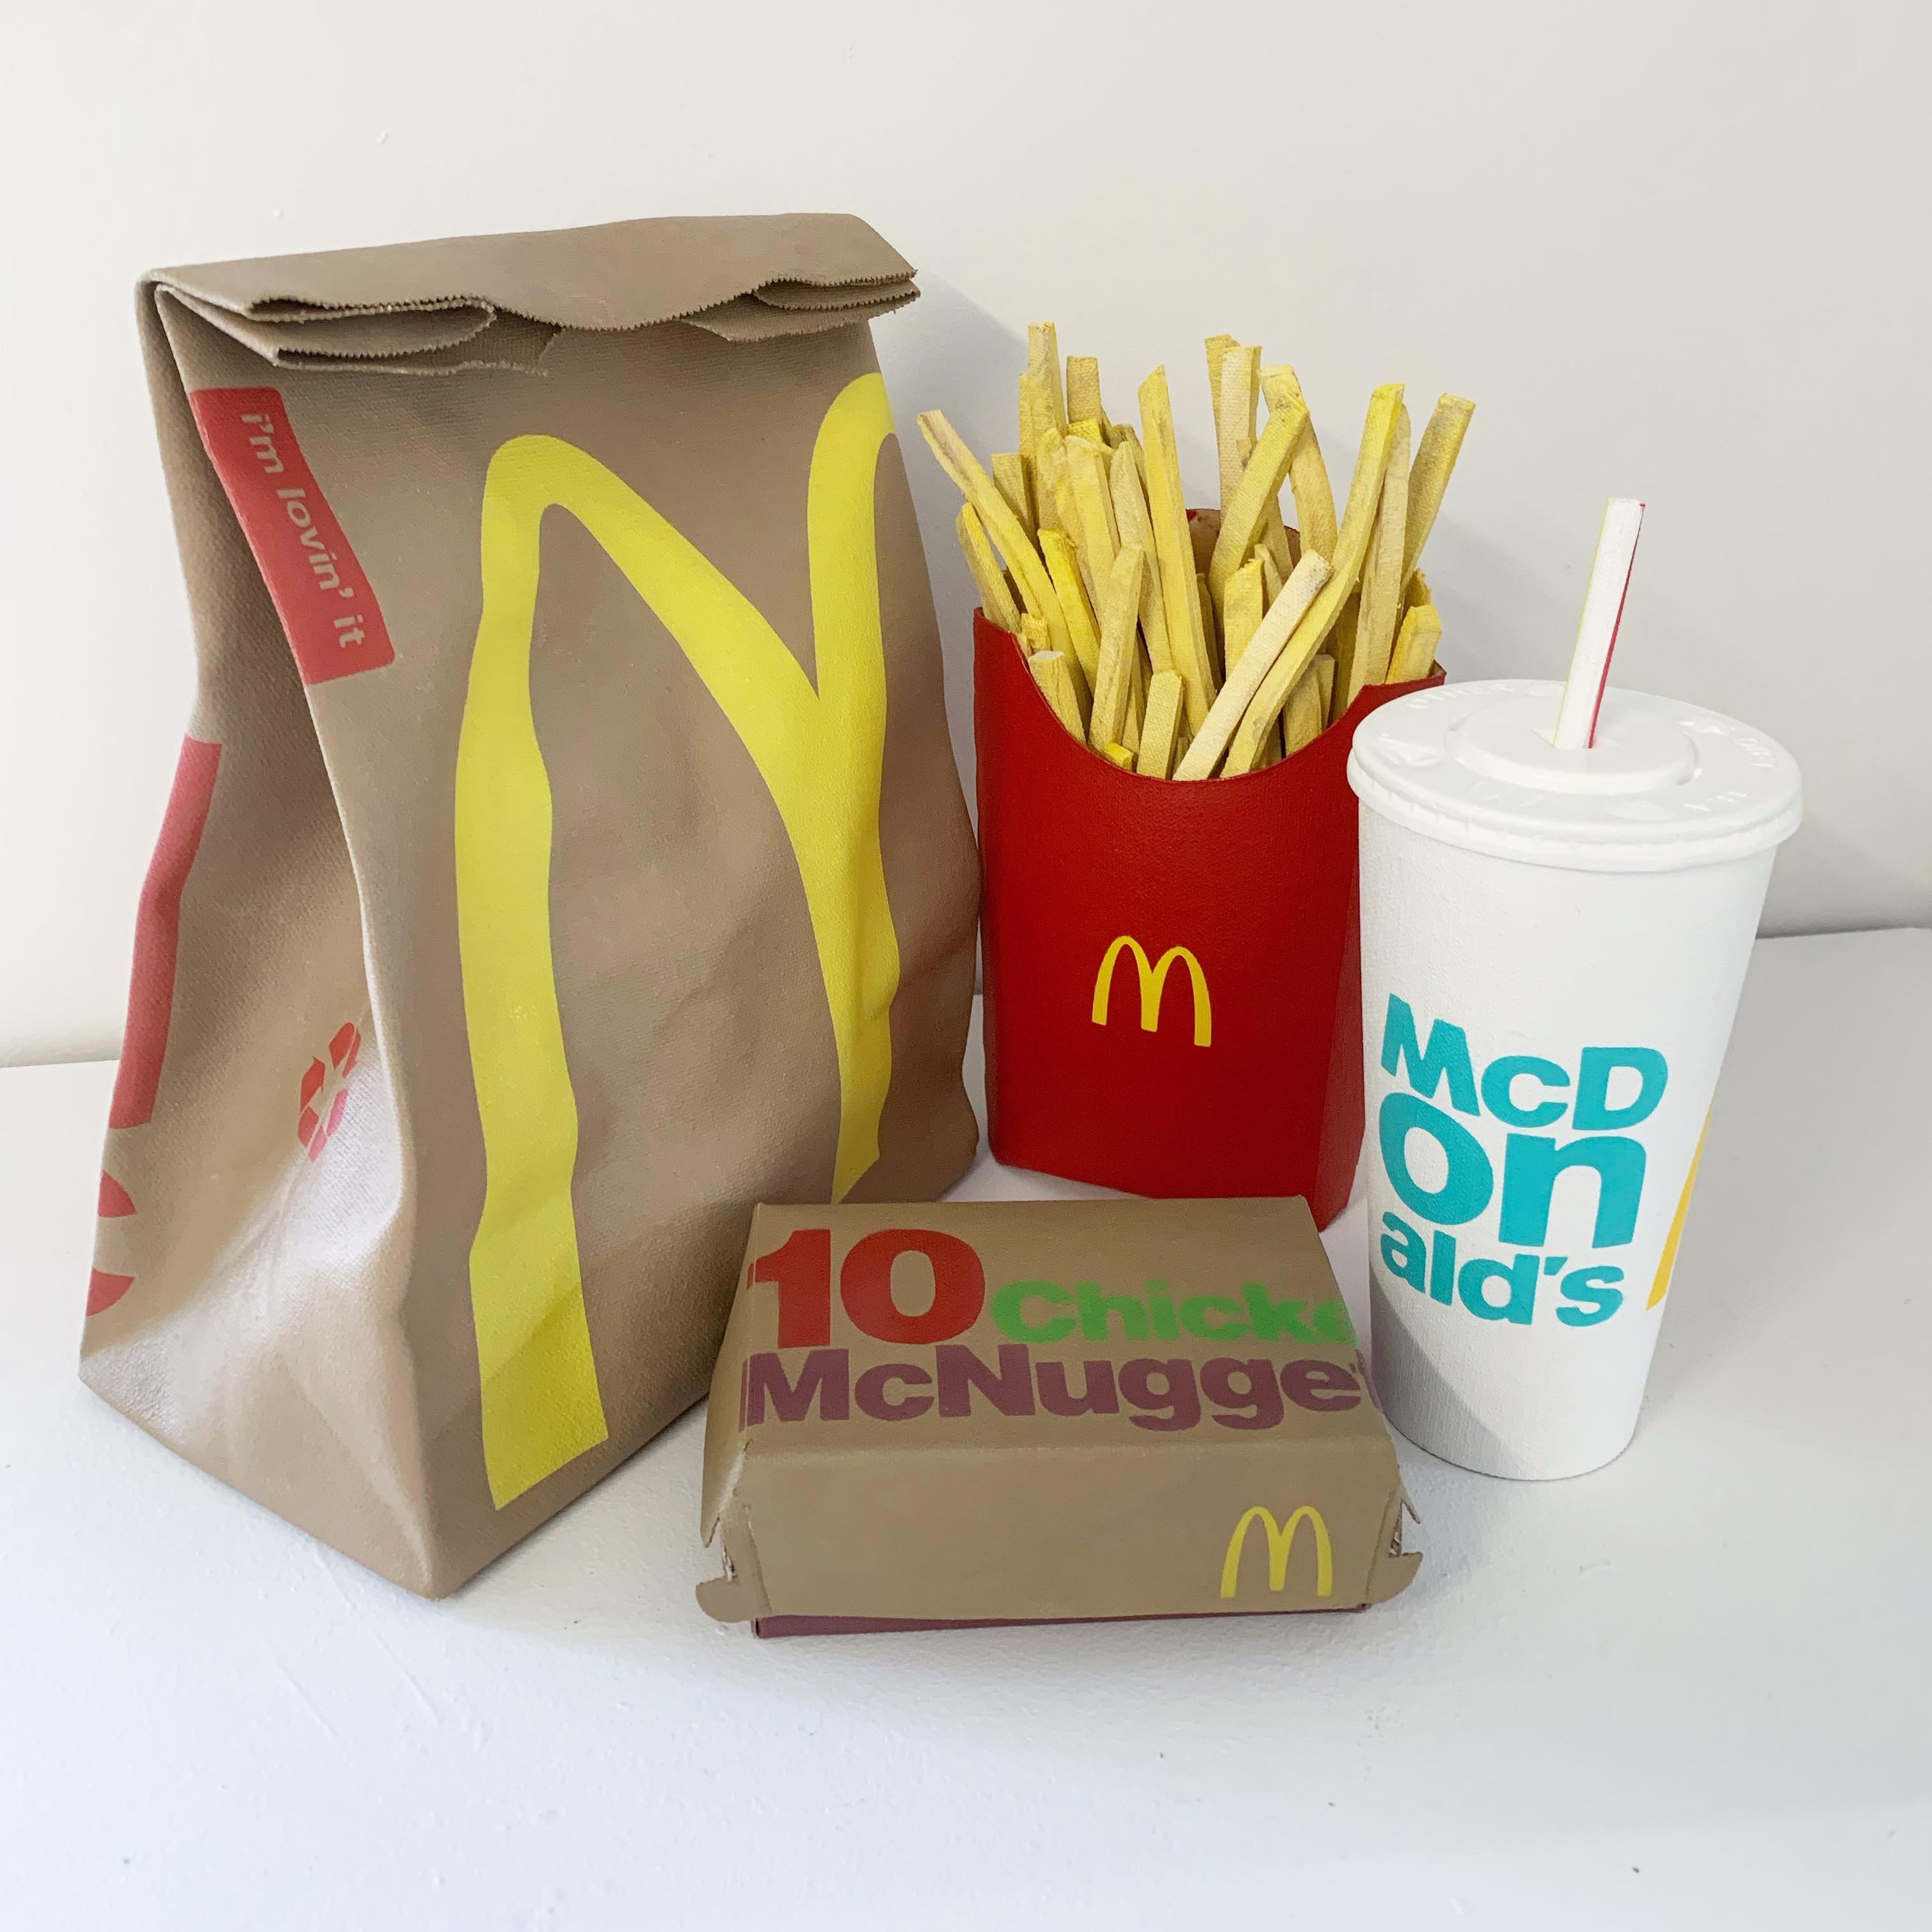 "Trompe l'oeil Series - McDonald's Meal" - Life Size - Sculpture by Joe Suzuki